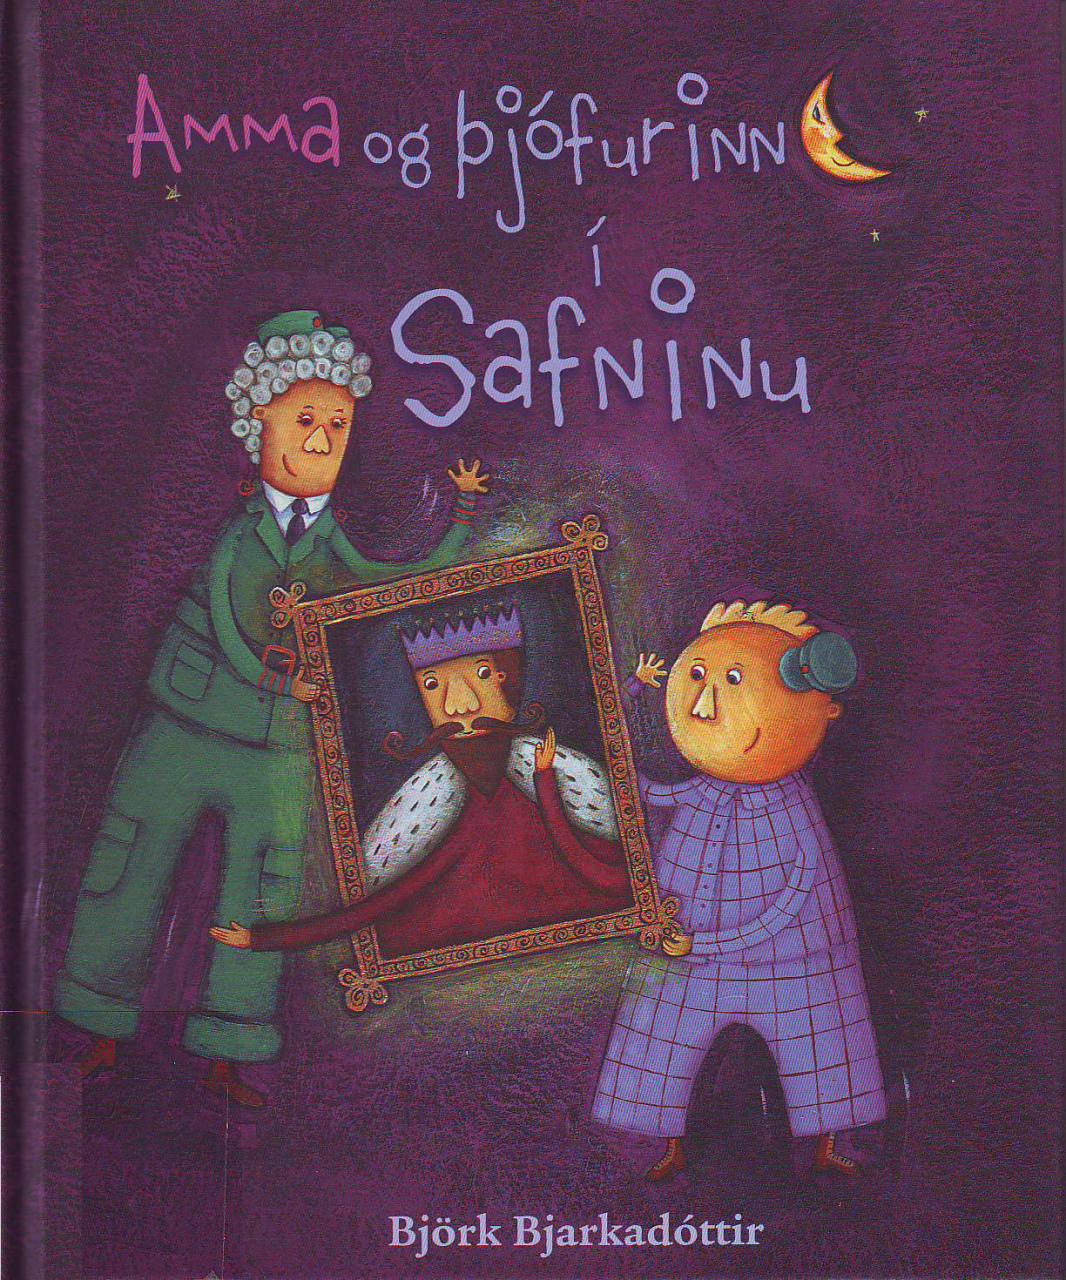 Amma og þjófurinn í safninu (Granny and the Thief in the Museum)